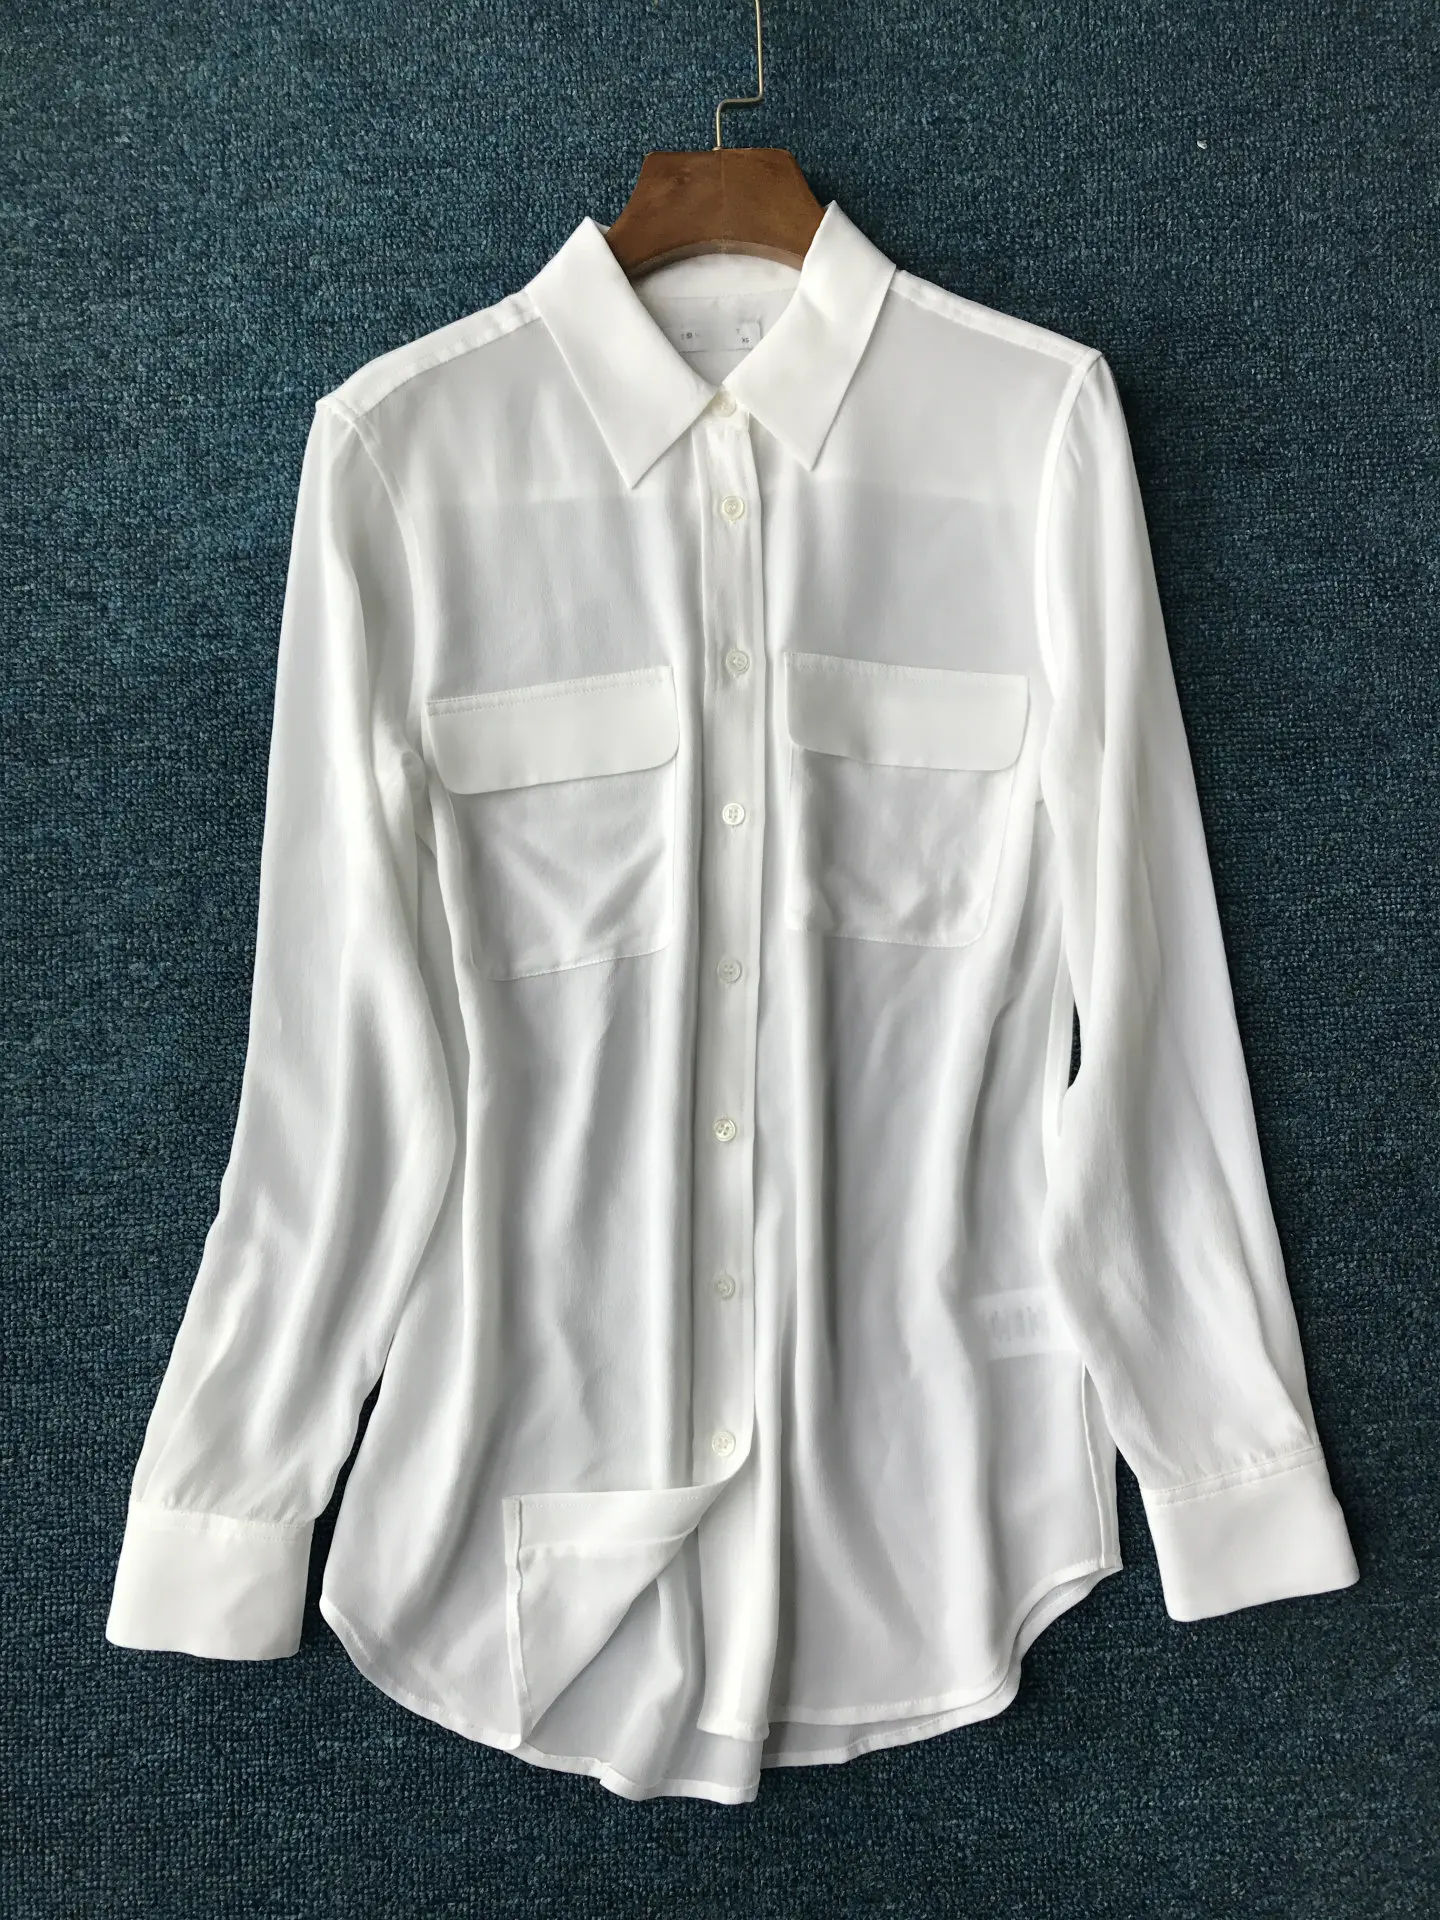 Женская рубашка,, песочная, моющаяся, шелковая, Классическая, с двойным карманом, с длинным рукавом, женская рубашка, Женские топы и блузки